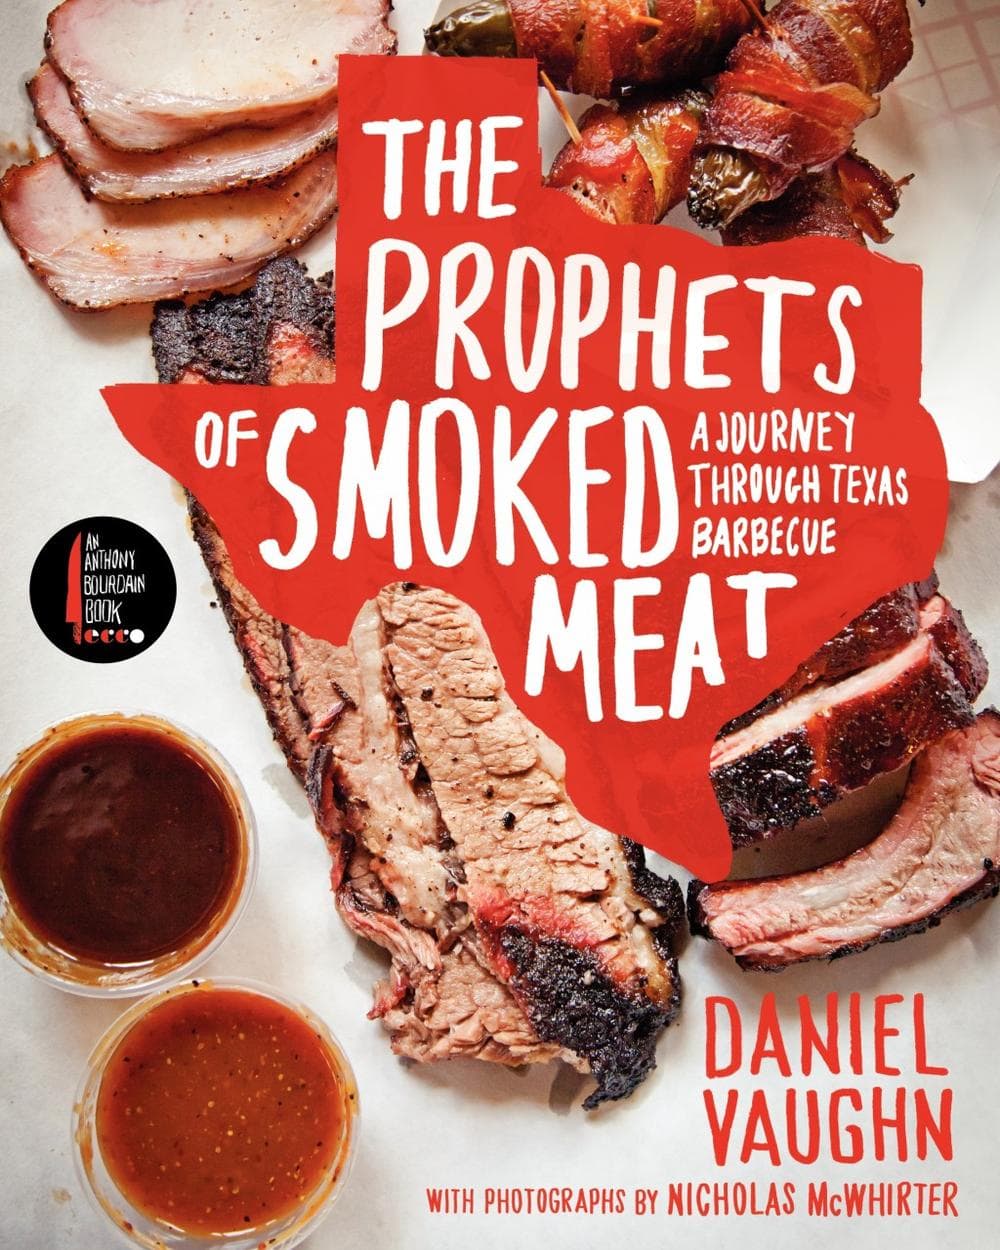 "The Prophets of Smoked Meat" Daniel Vaughn